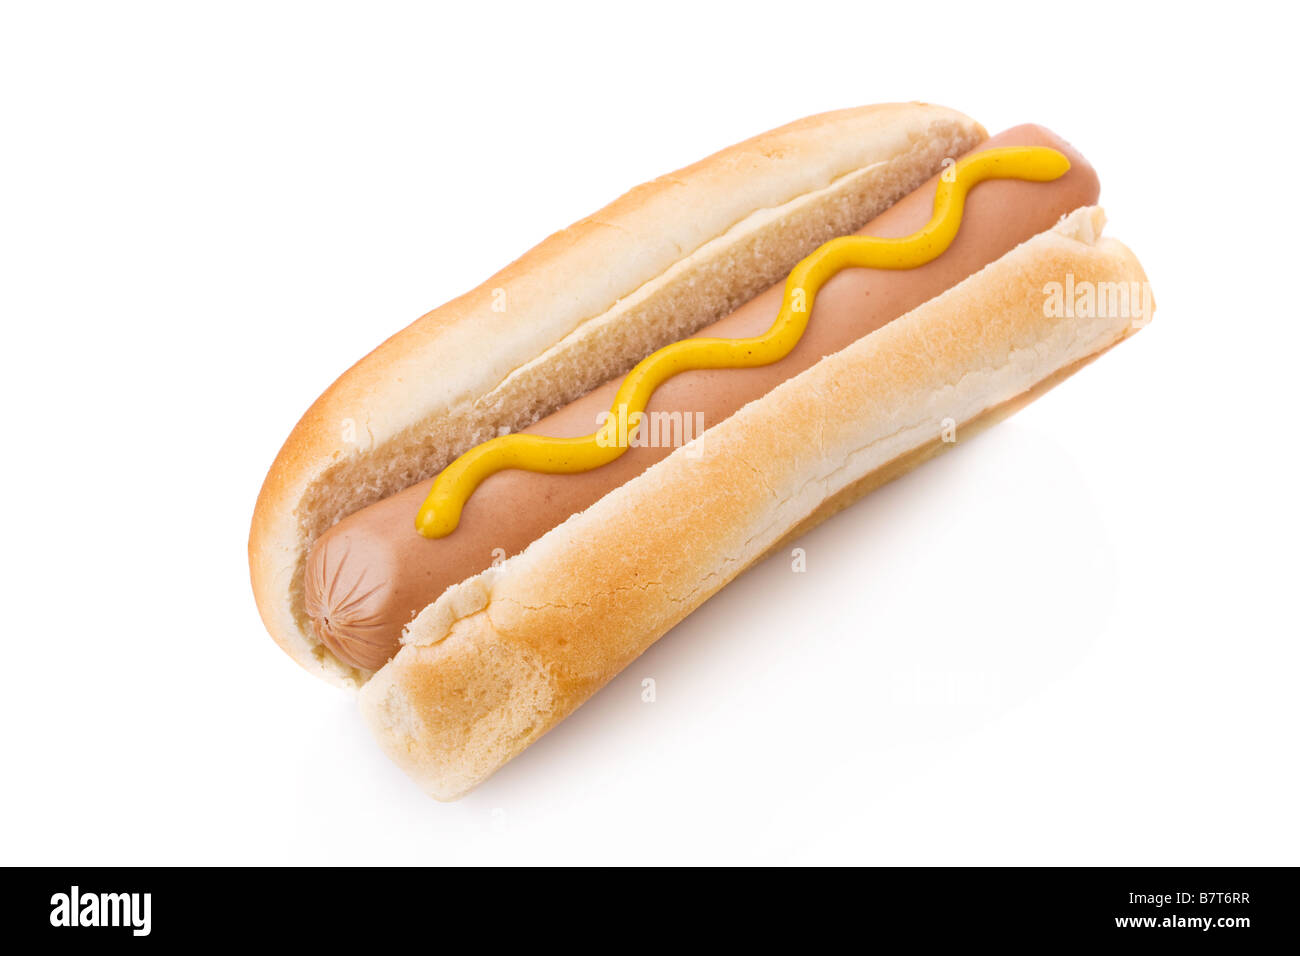 Mustard hotdog isolated on a white background Stock Photo